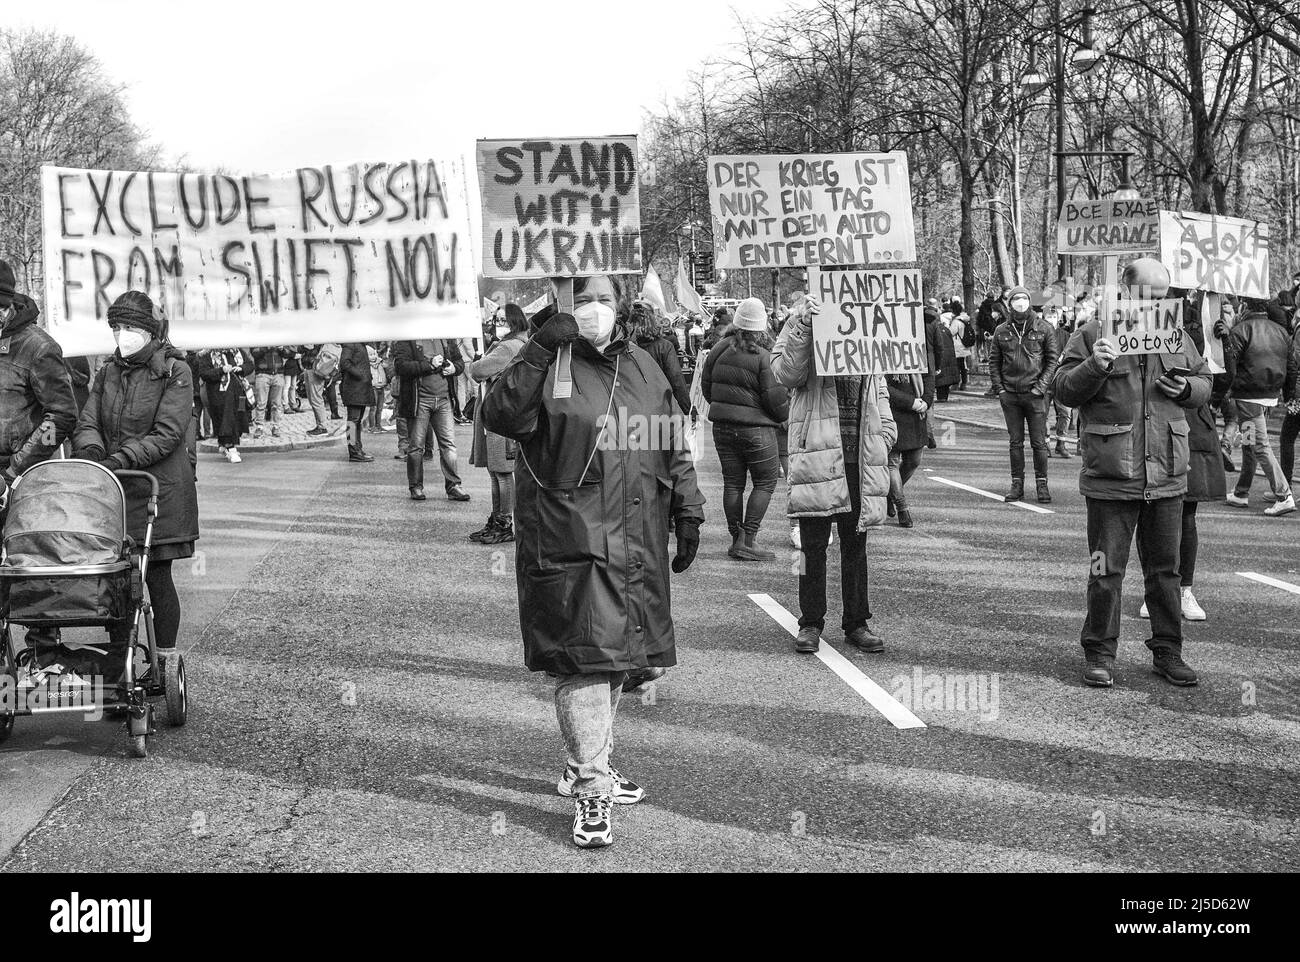 Germania, Berlino, 27 febbraio 2022. Dimostrazione contro Putin e l'invasione russa dell'Ucraina a Berlino il 27 febbraio 2022. Banner e cartelloni [traduzione automatica] Foto Stock